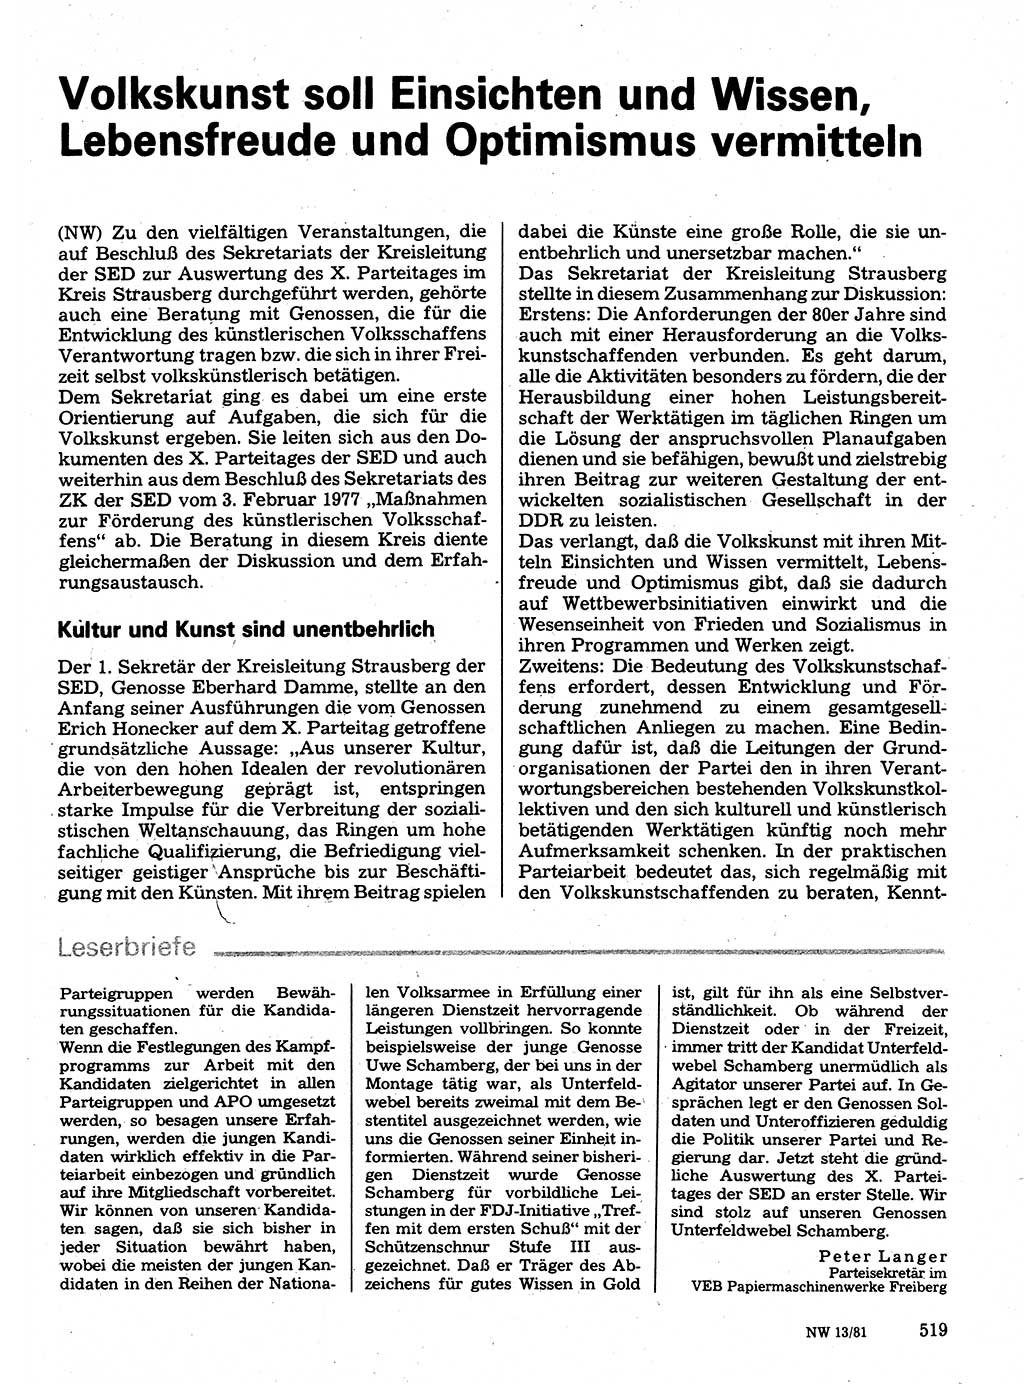 Neuer Weg (NW), Organ des Zentralkomitees (ZK) der SED (Sozialistische Einheitspartei Deutschlands) für Fragen des Parteilebens, 36. Jahrgang [Deutsche Demokratische Republik (DDR)] 1981, Seite 519 (NW ZK SED DDR 1981, S. 519)